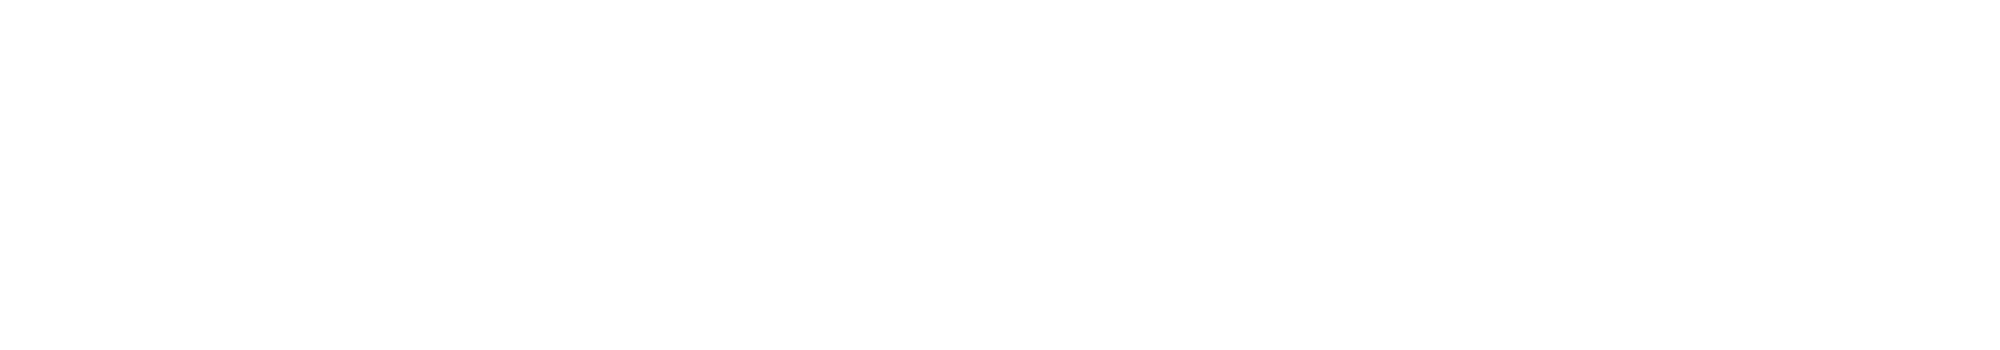 Escuela Argentina de Eutonía